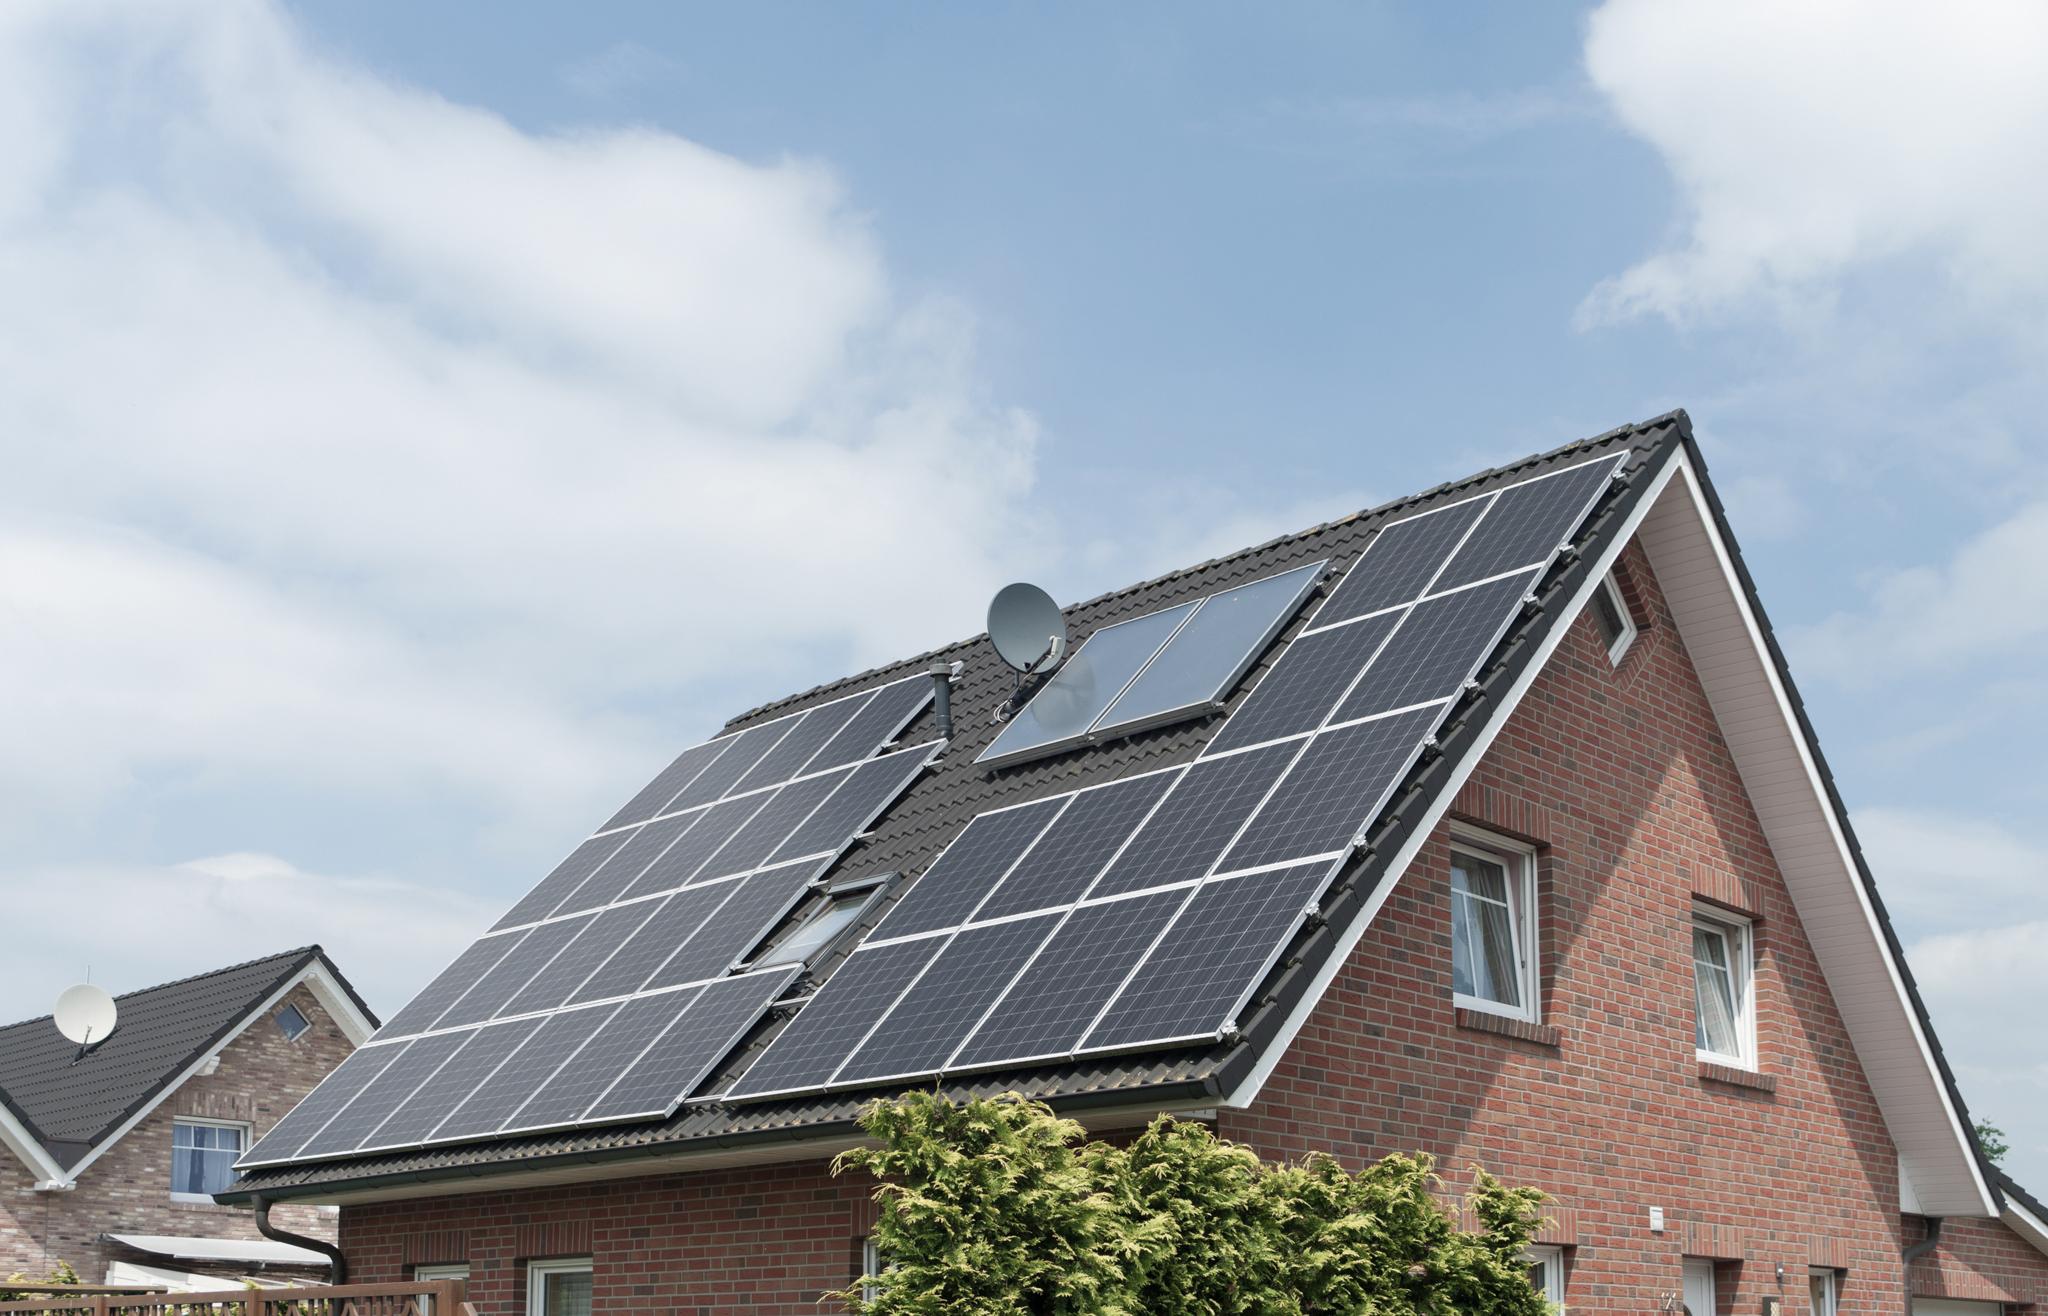 Einfamilienhaus mit Solaranlage auf dem Dach – Photovoltaik mieten oder kaufen? 